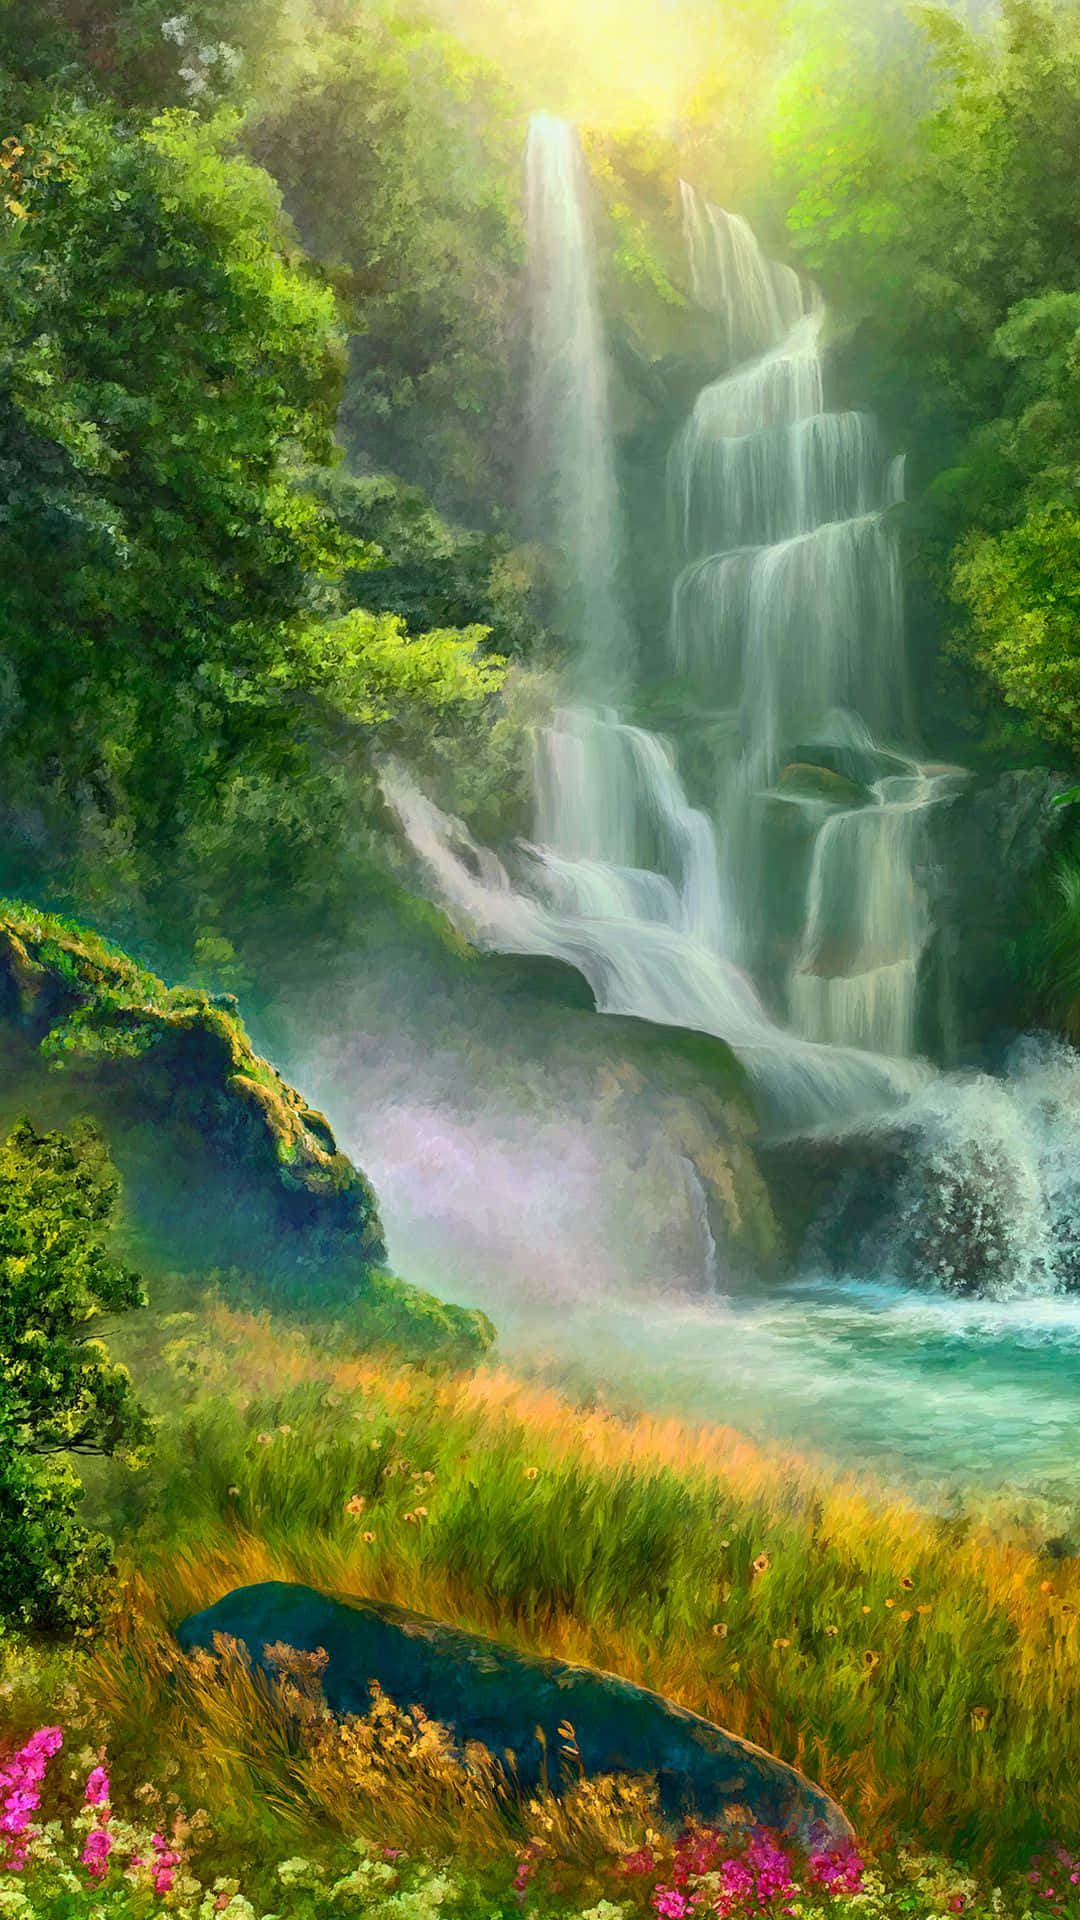 Erfrischensie Ihre Sinne Mit Einem Beruhigenden Blick Auf Einen Wasserfall Auf Dem Iphone. Wallpaper